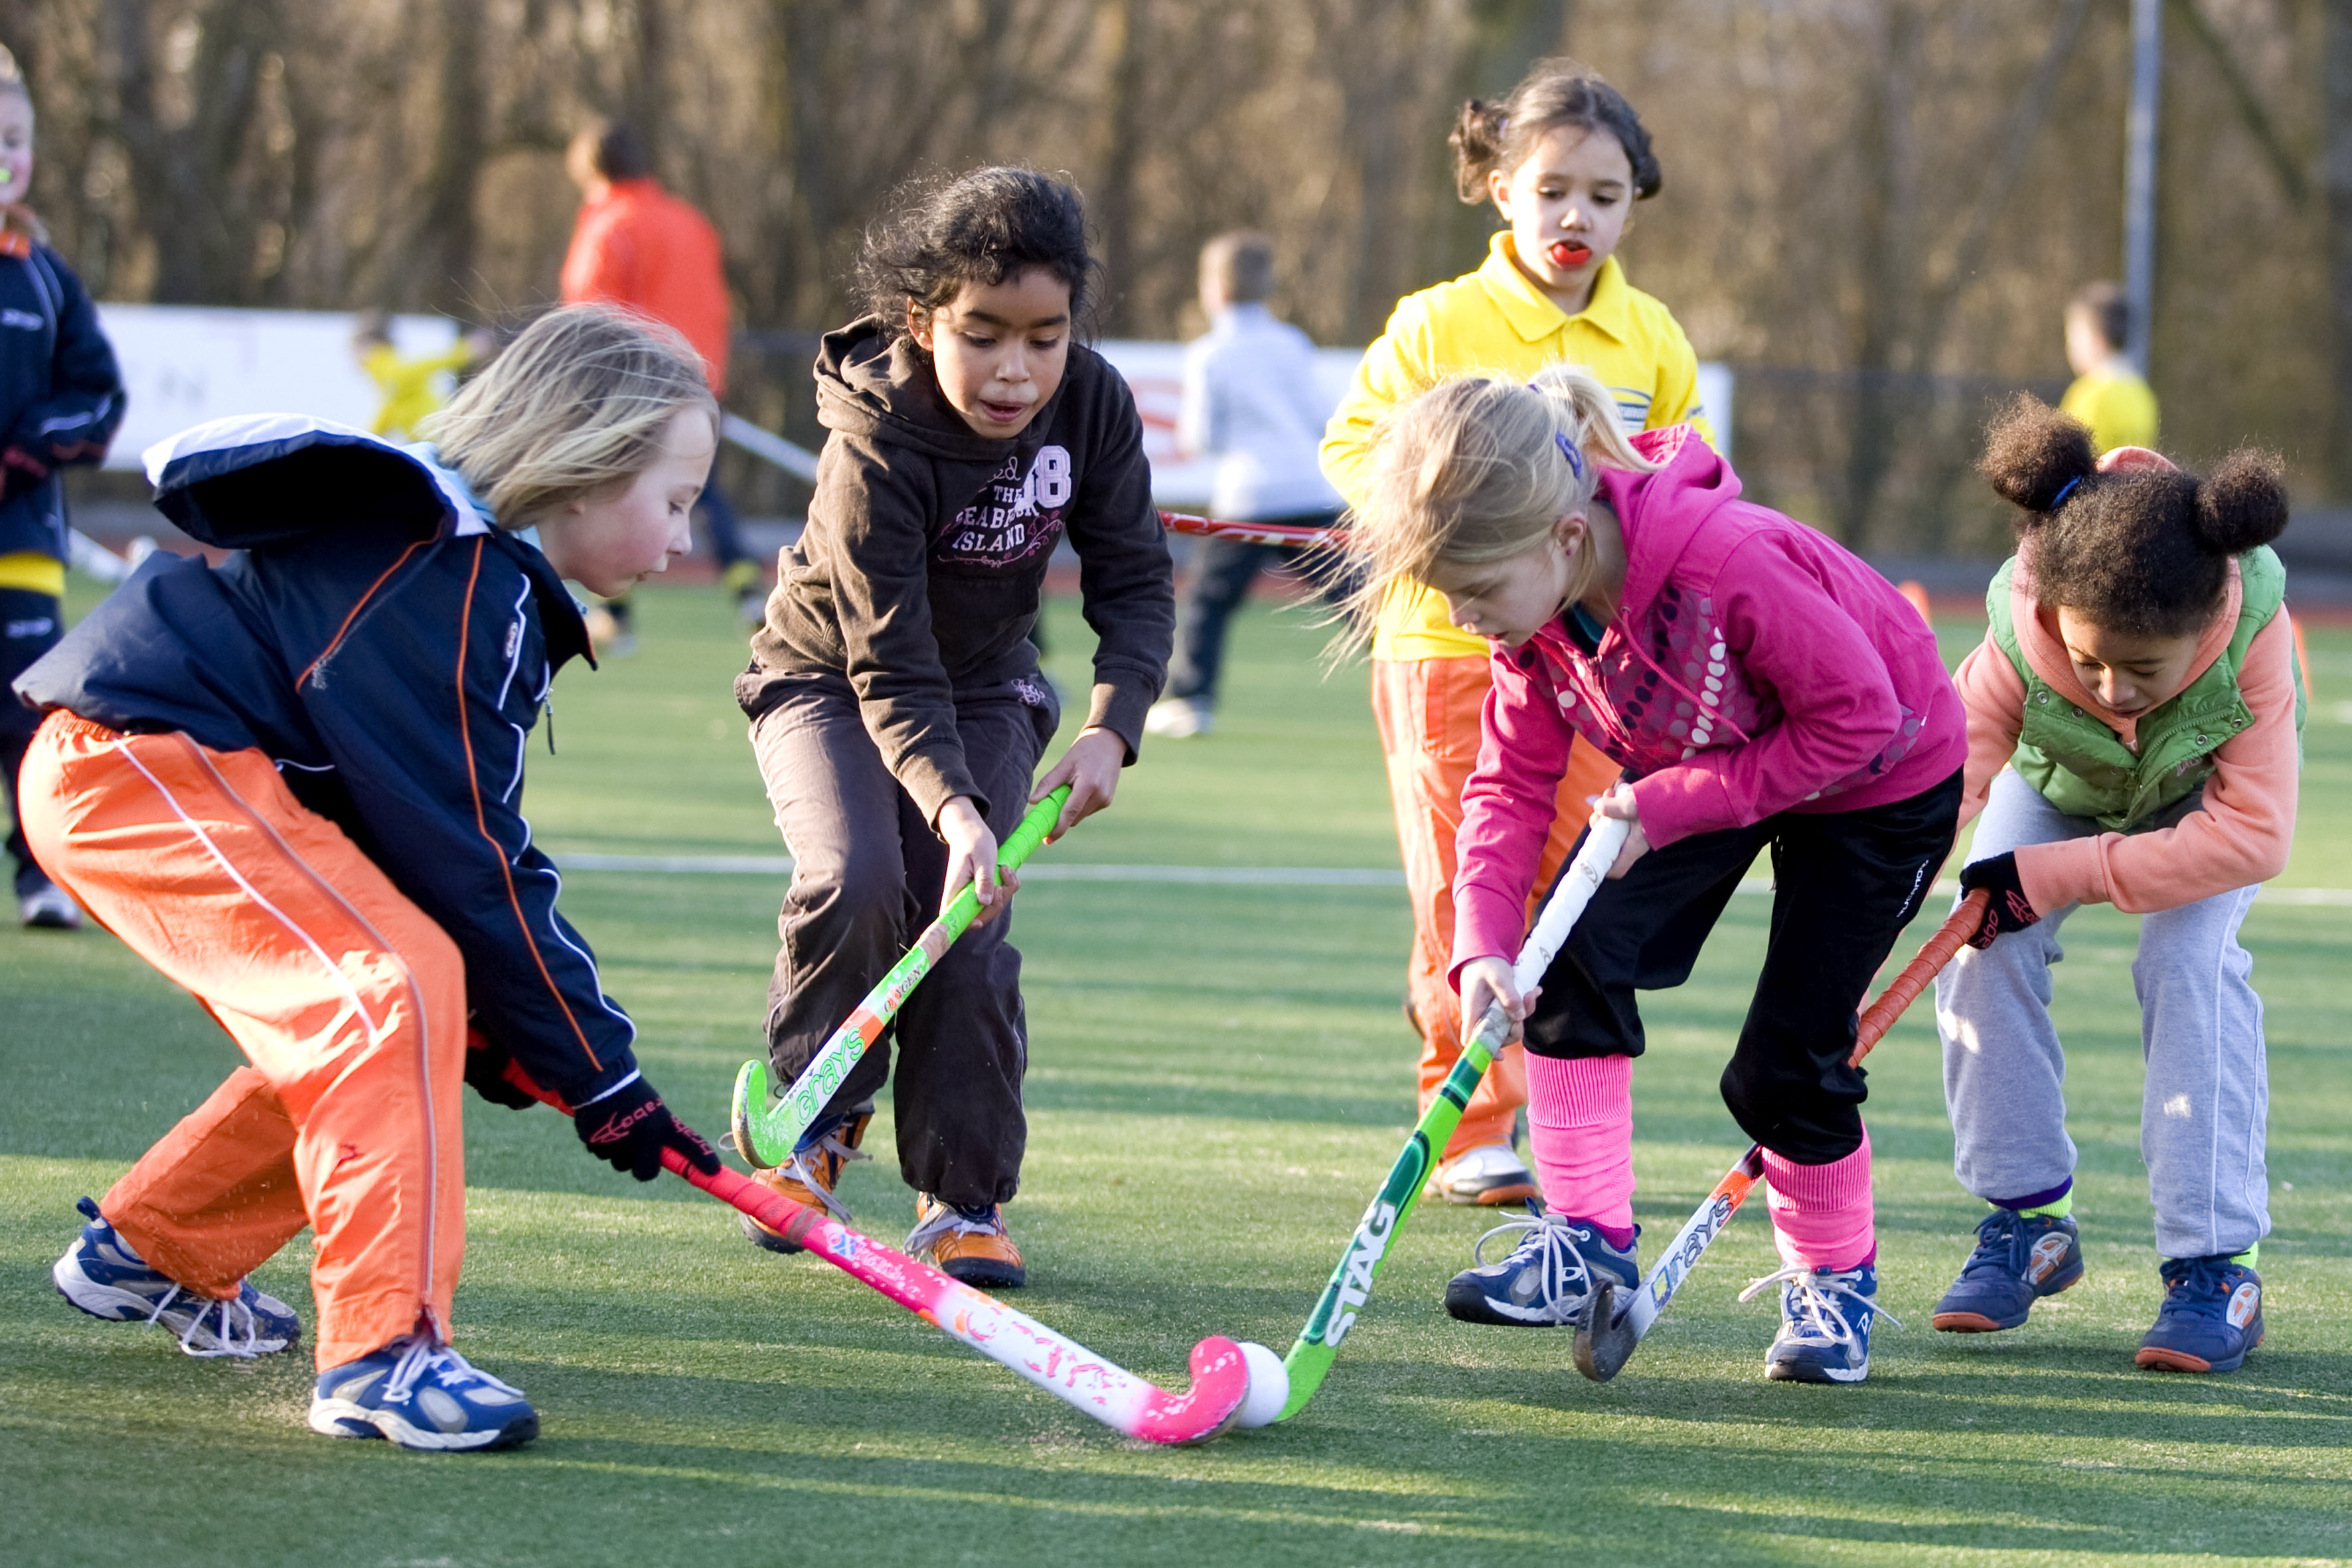 hockeytraining wordt gegeven aan kinderen